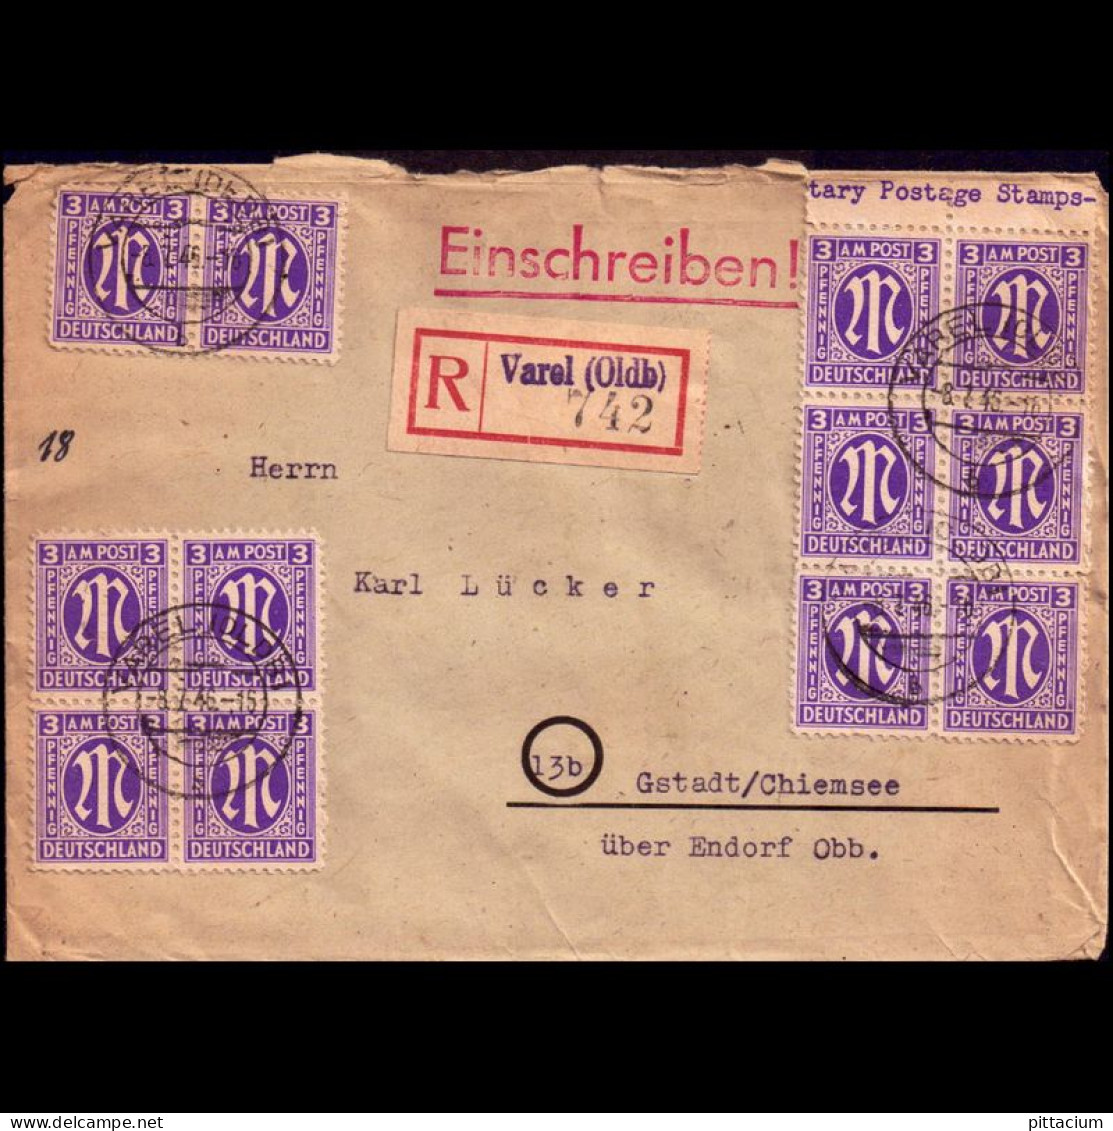 Alleiierte Besetzung 1946: Brief, Einschreibebrief Einzelfrankatur | Portostufen, Oberrand, Fernbrief | Varel, Gstadt - Libya